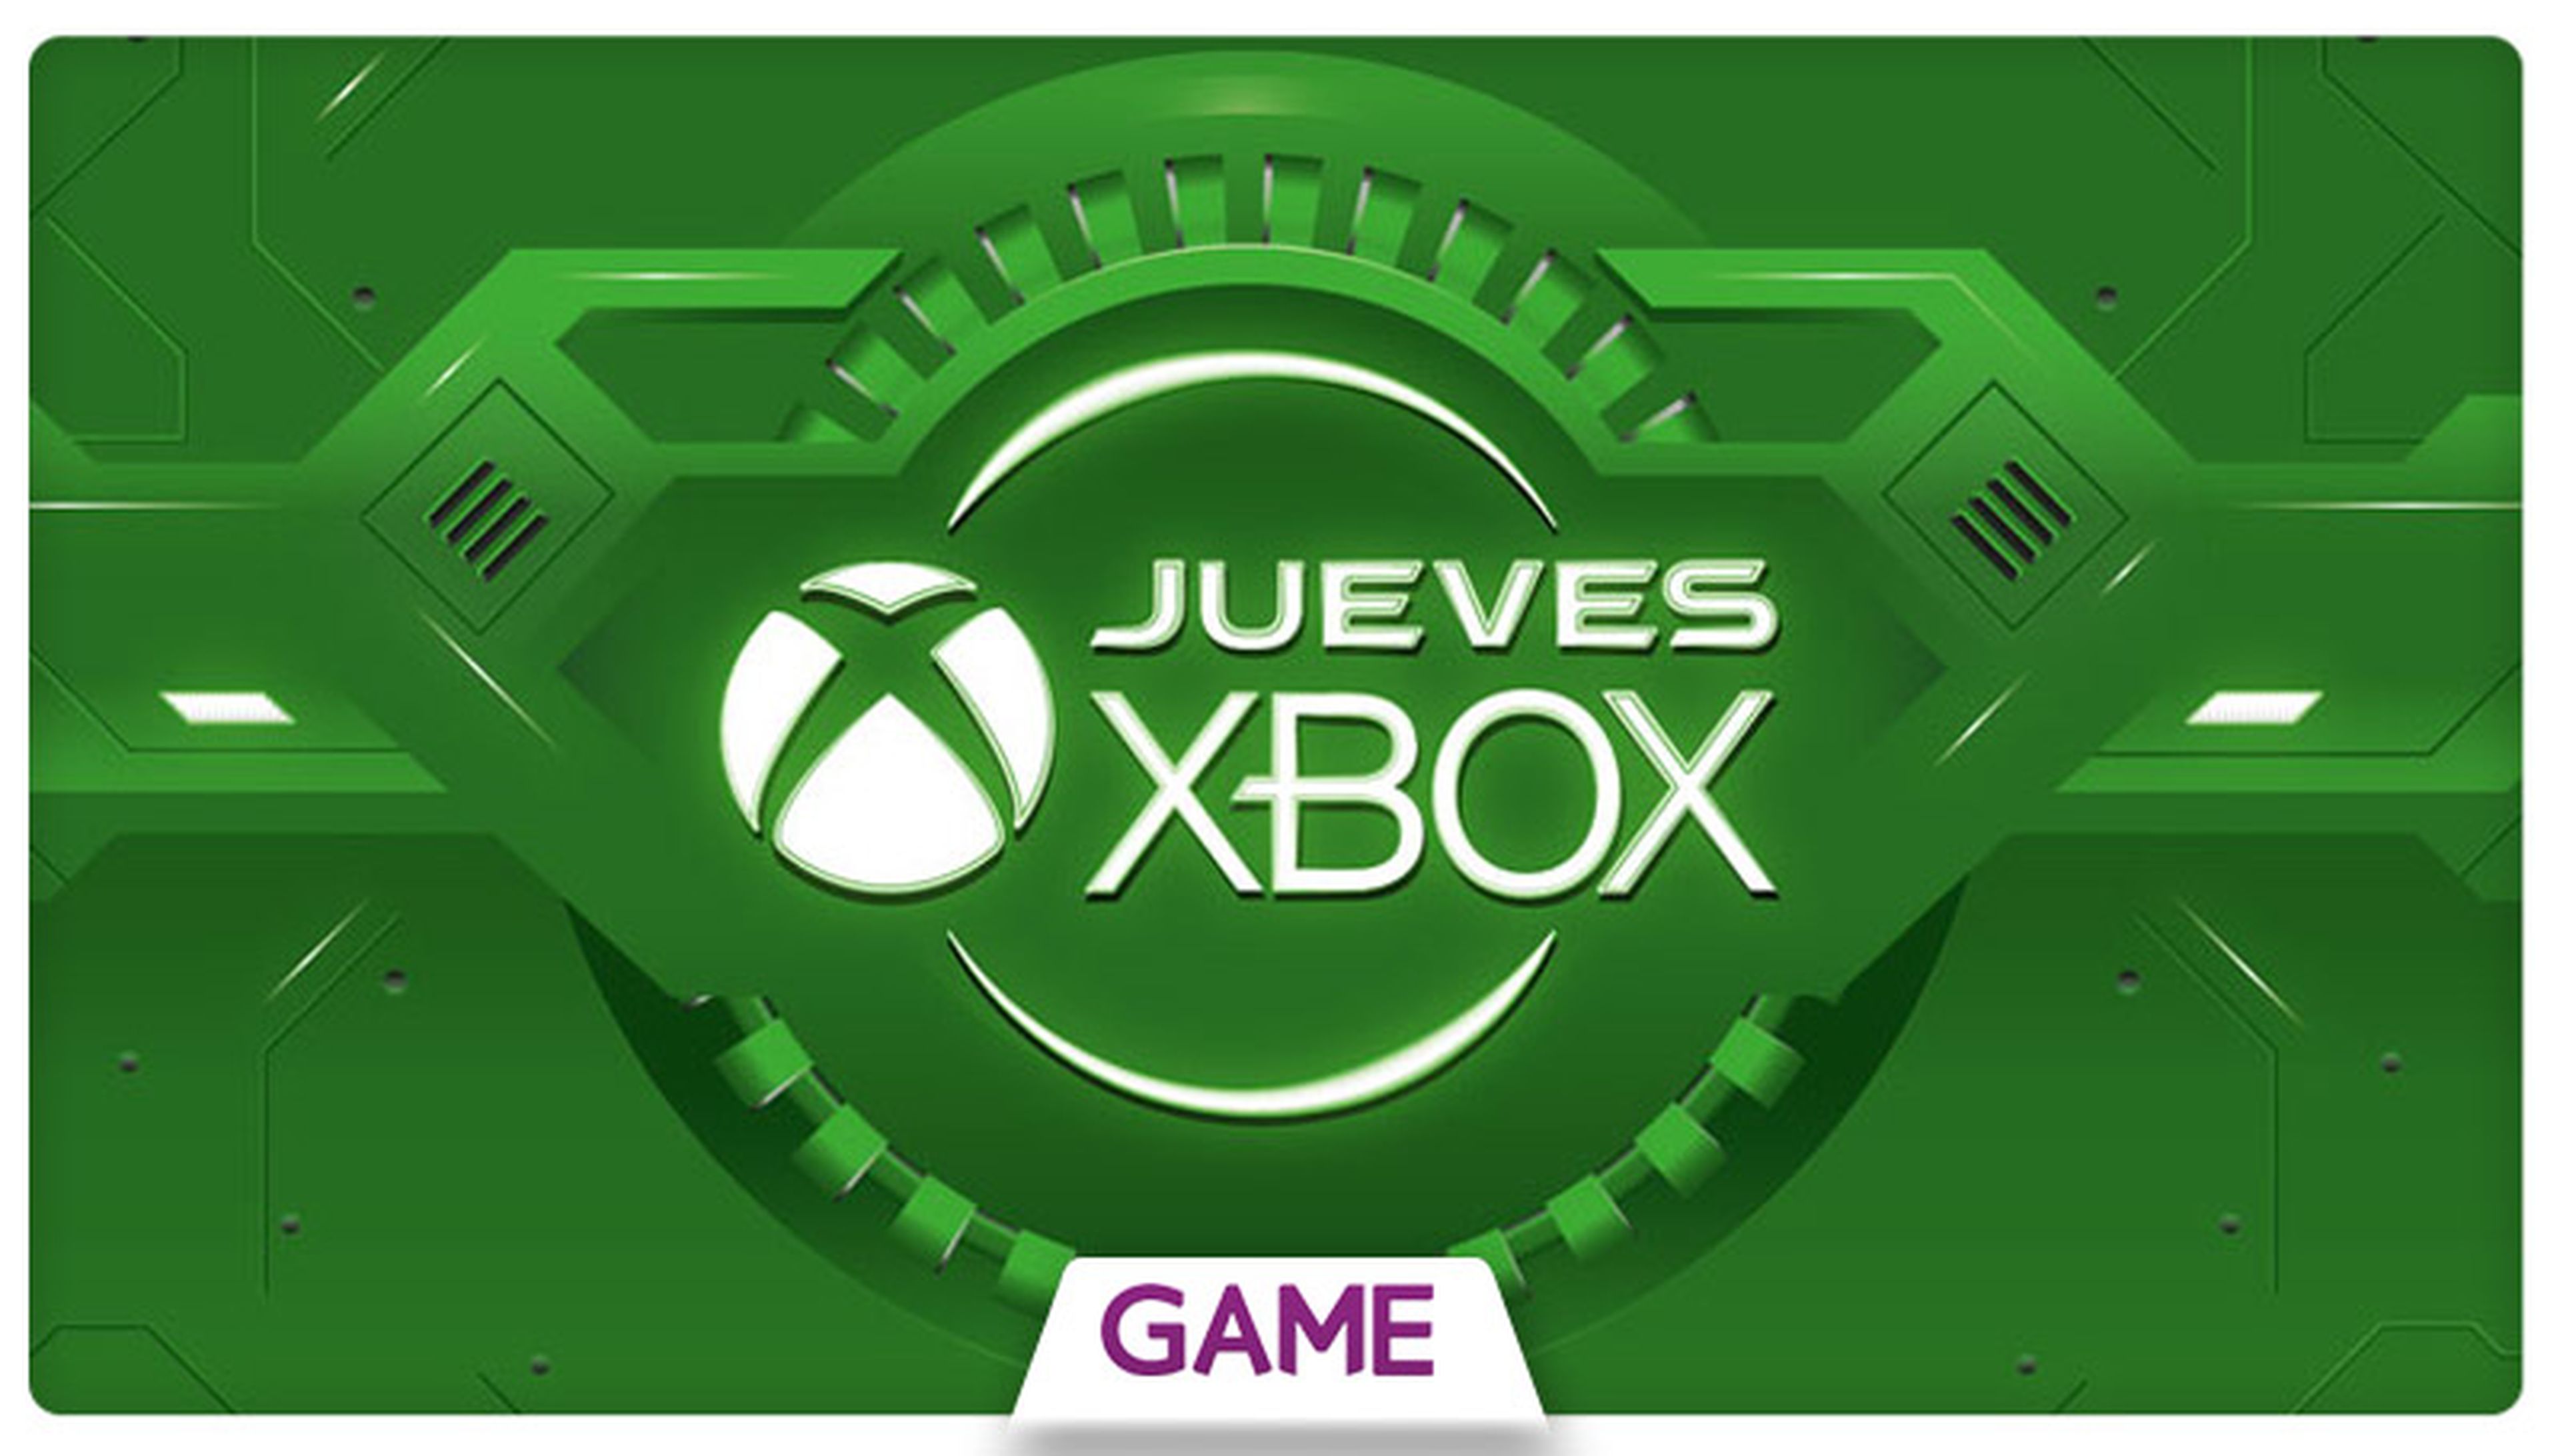 Jueves Xbox en GAME: Ofertas del 18/02/2016